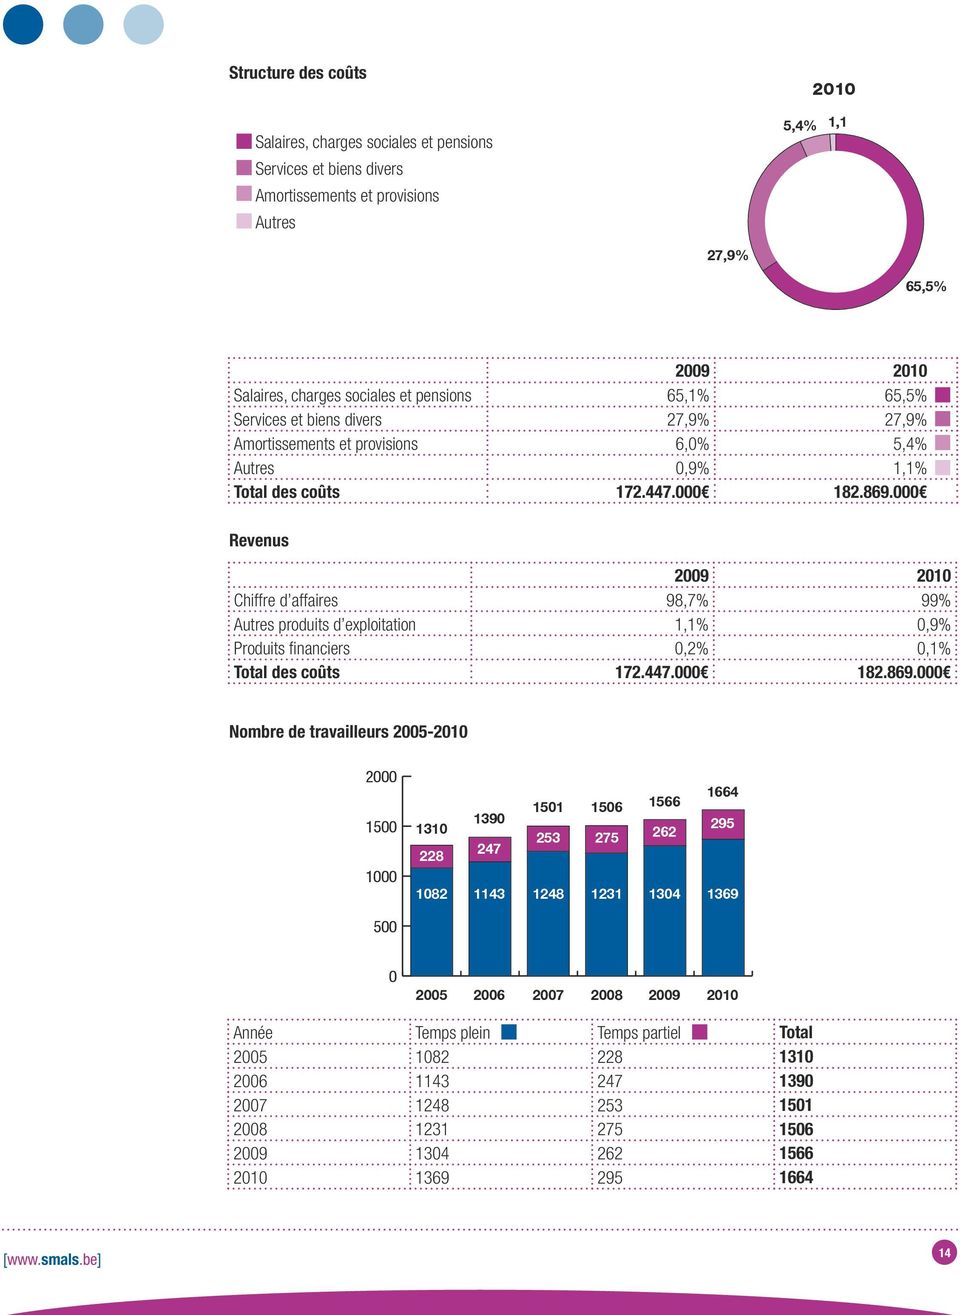 000 Revenus 2009 2010 Chiffre d affaires 98,7% 99% Autres produits d exploitation 1,1% 0,9% Produits financiers 0,2% 0,1% Total des coûts 172.447.000 182.869.